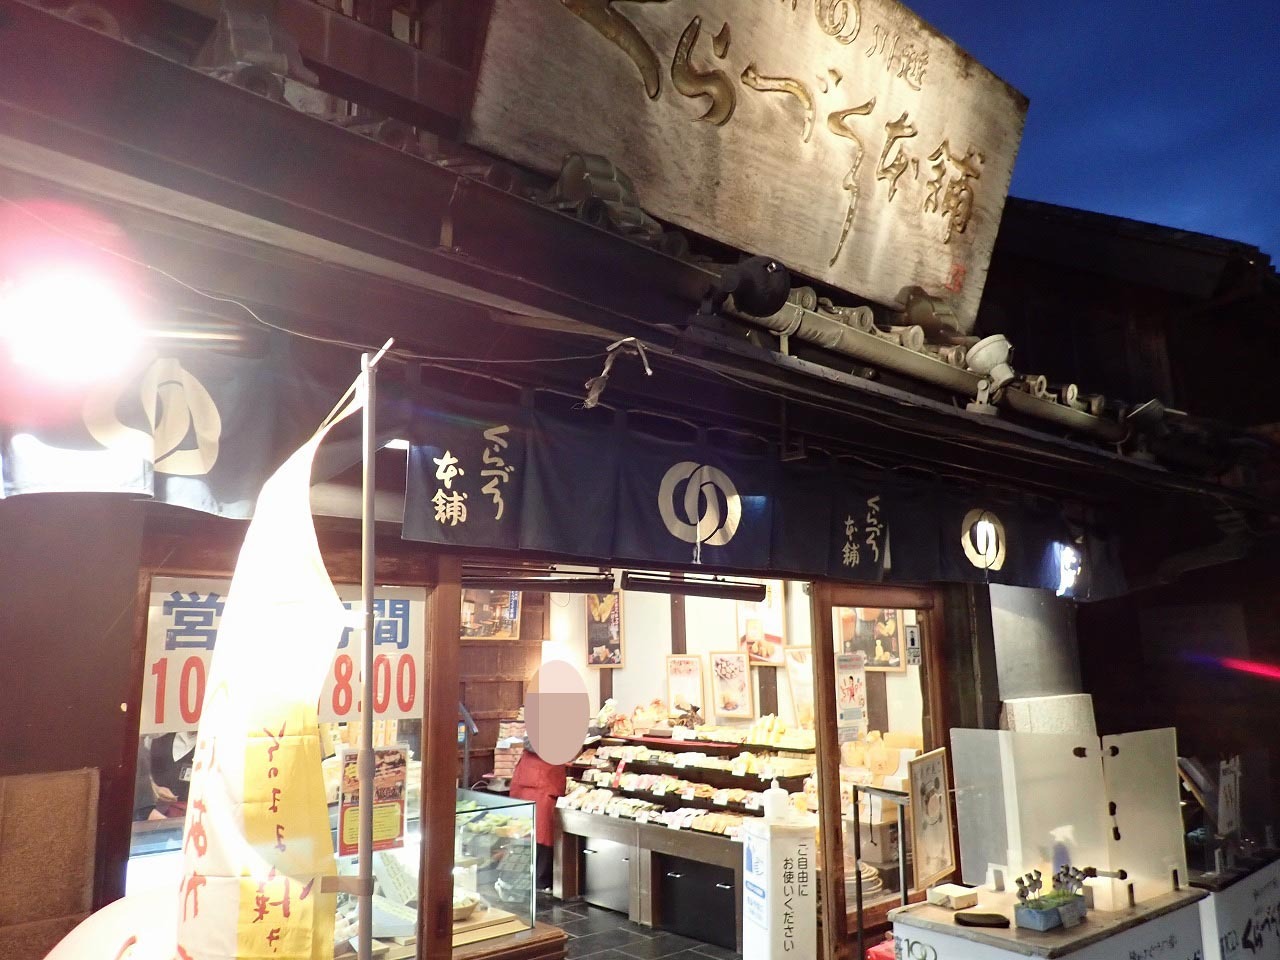 「くらづくり本舗」は私たち川越市民にはお馴染みといえる和菓子の名店です